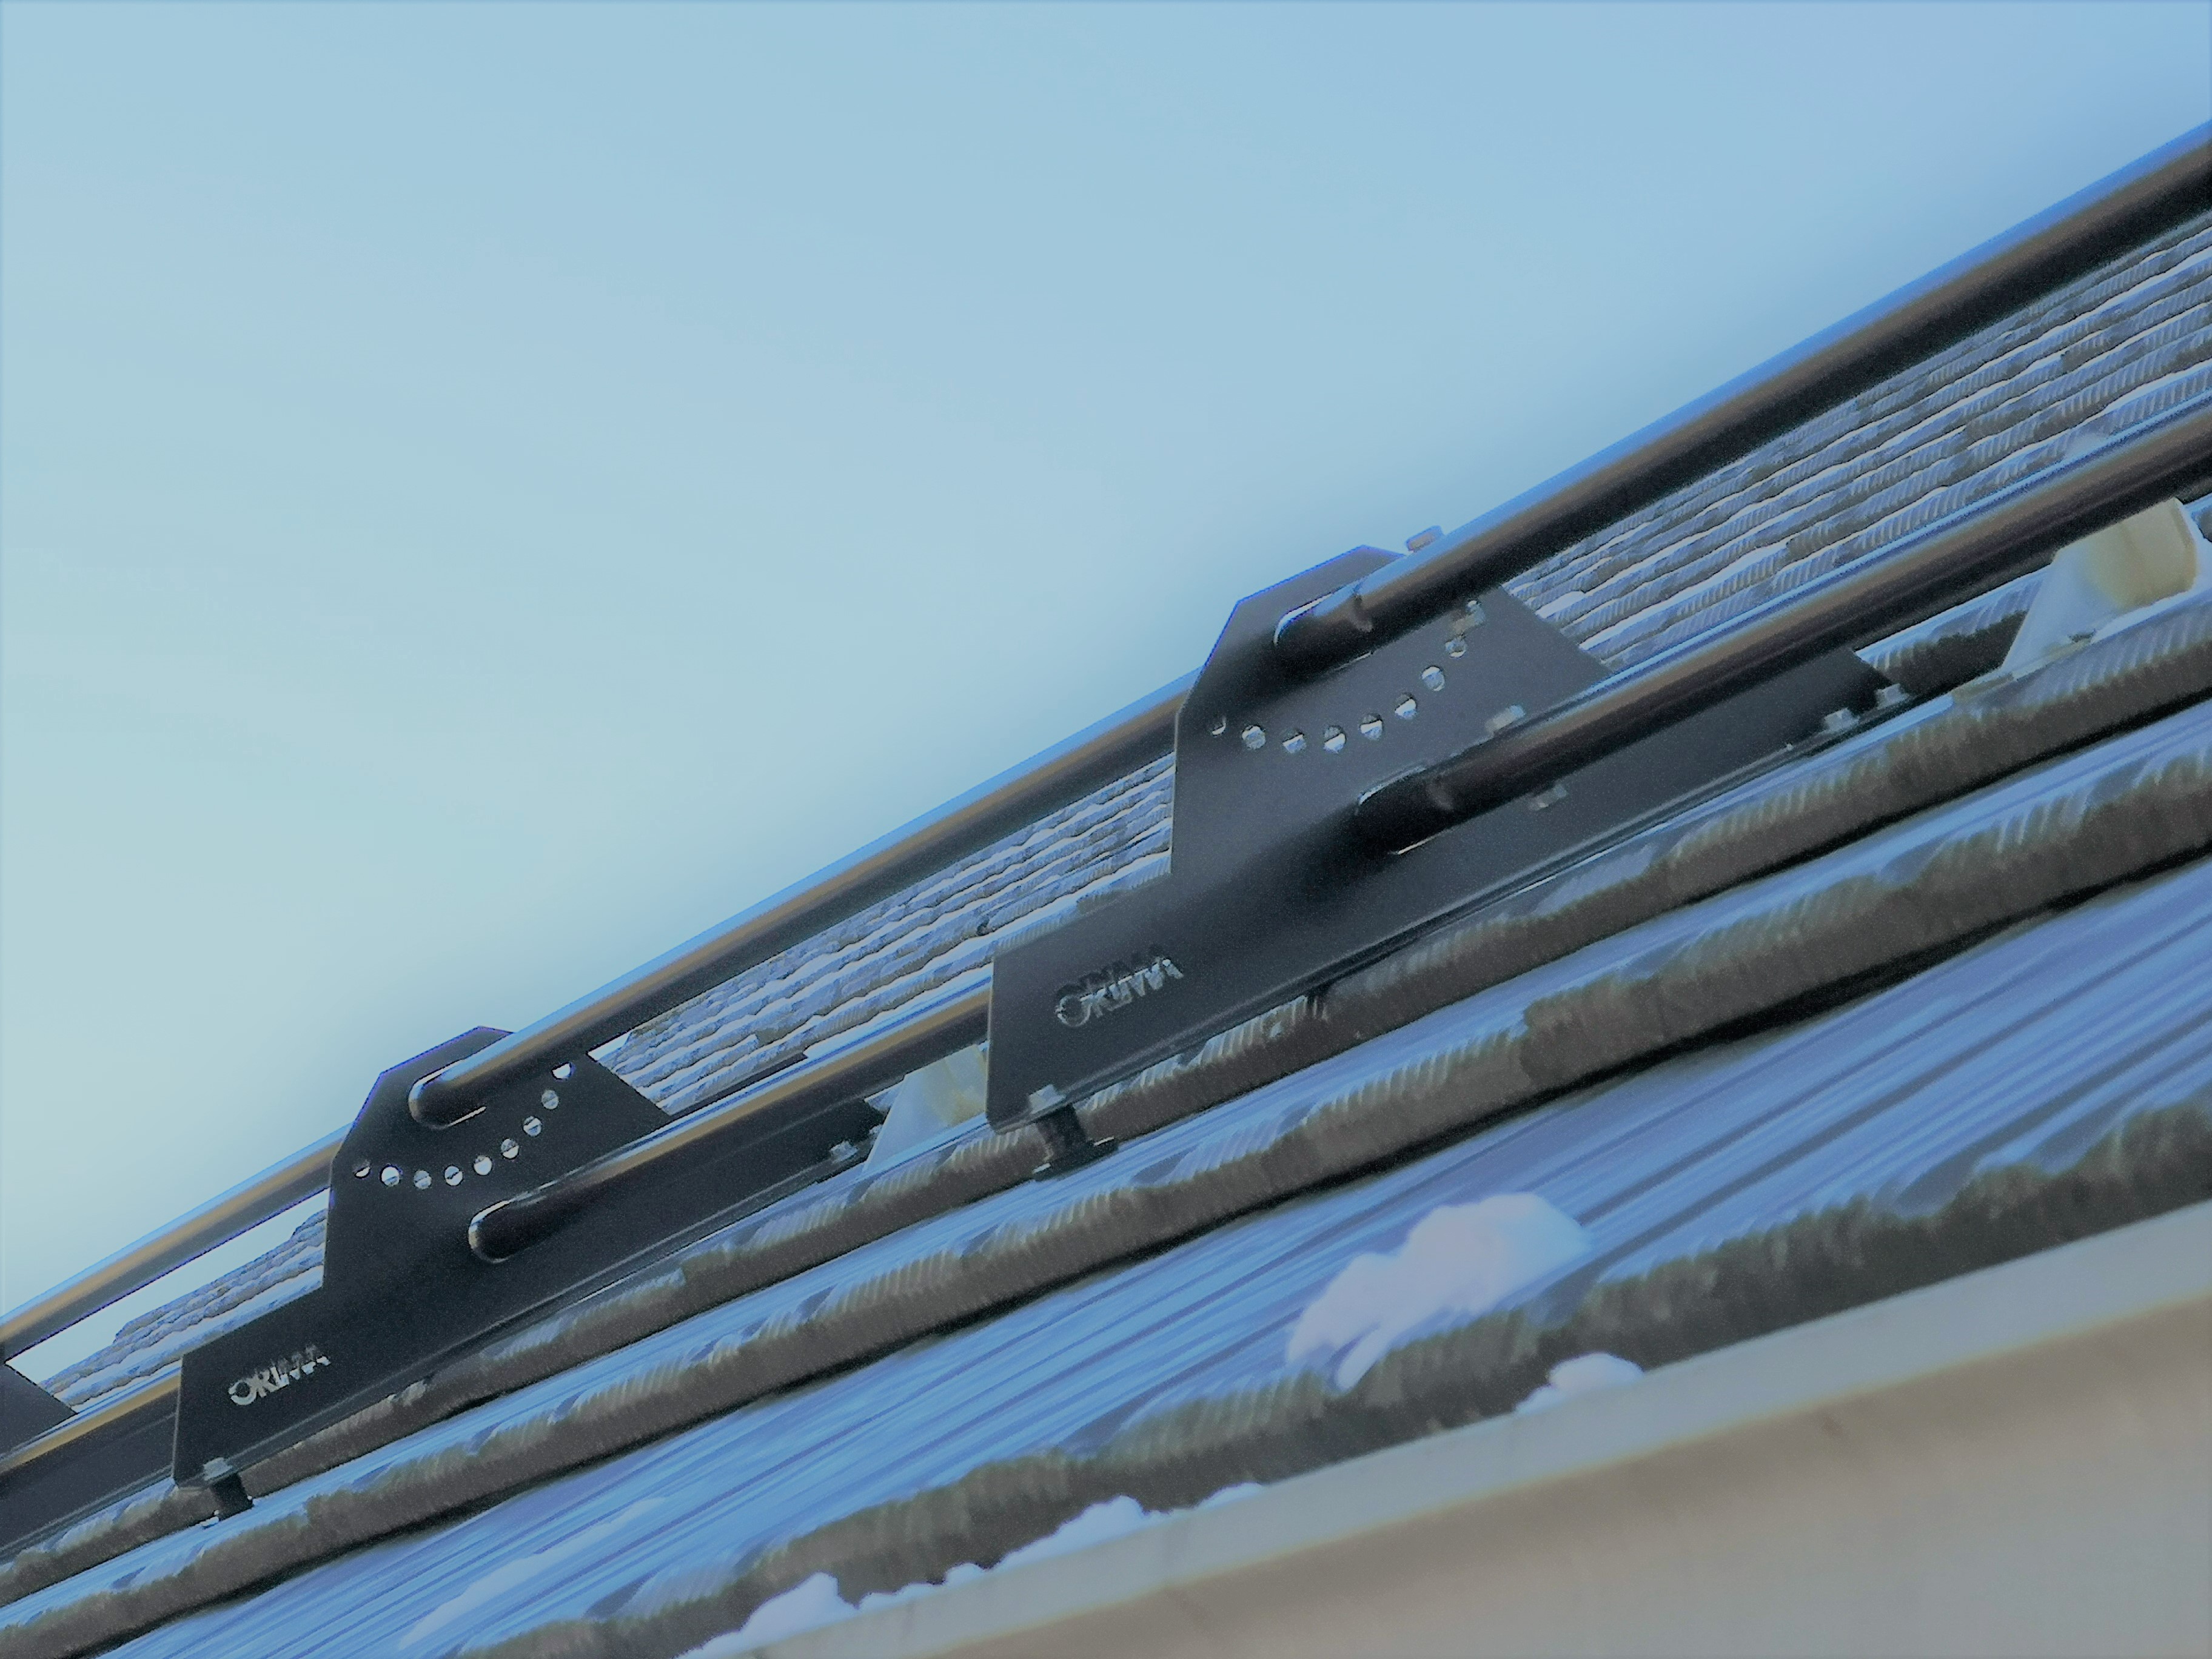 Tubular Snow Guards on metal shingles roof